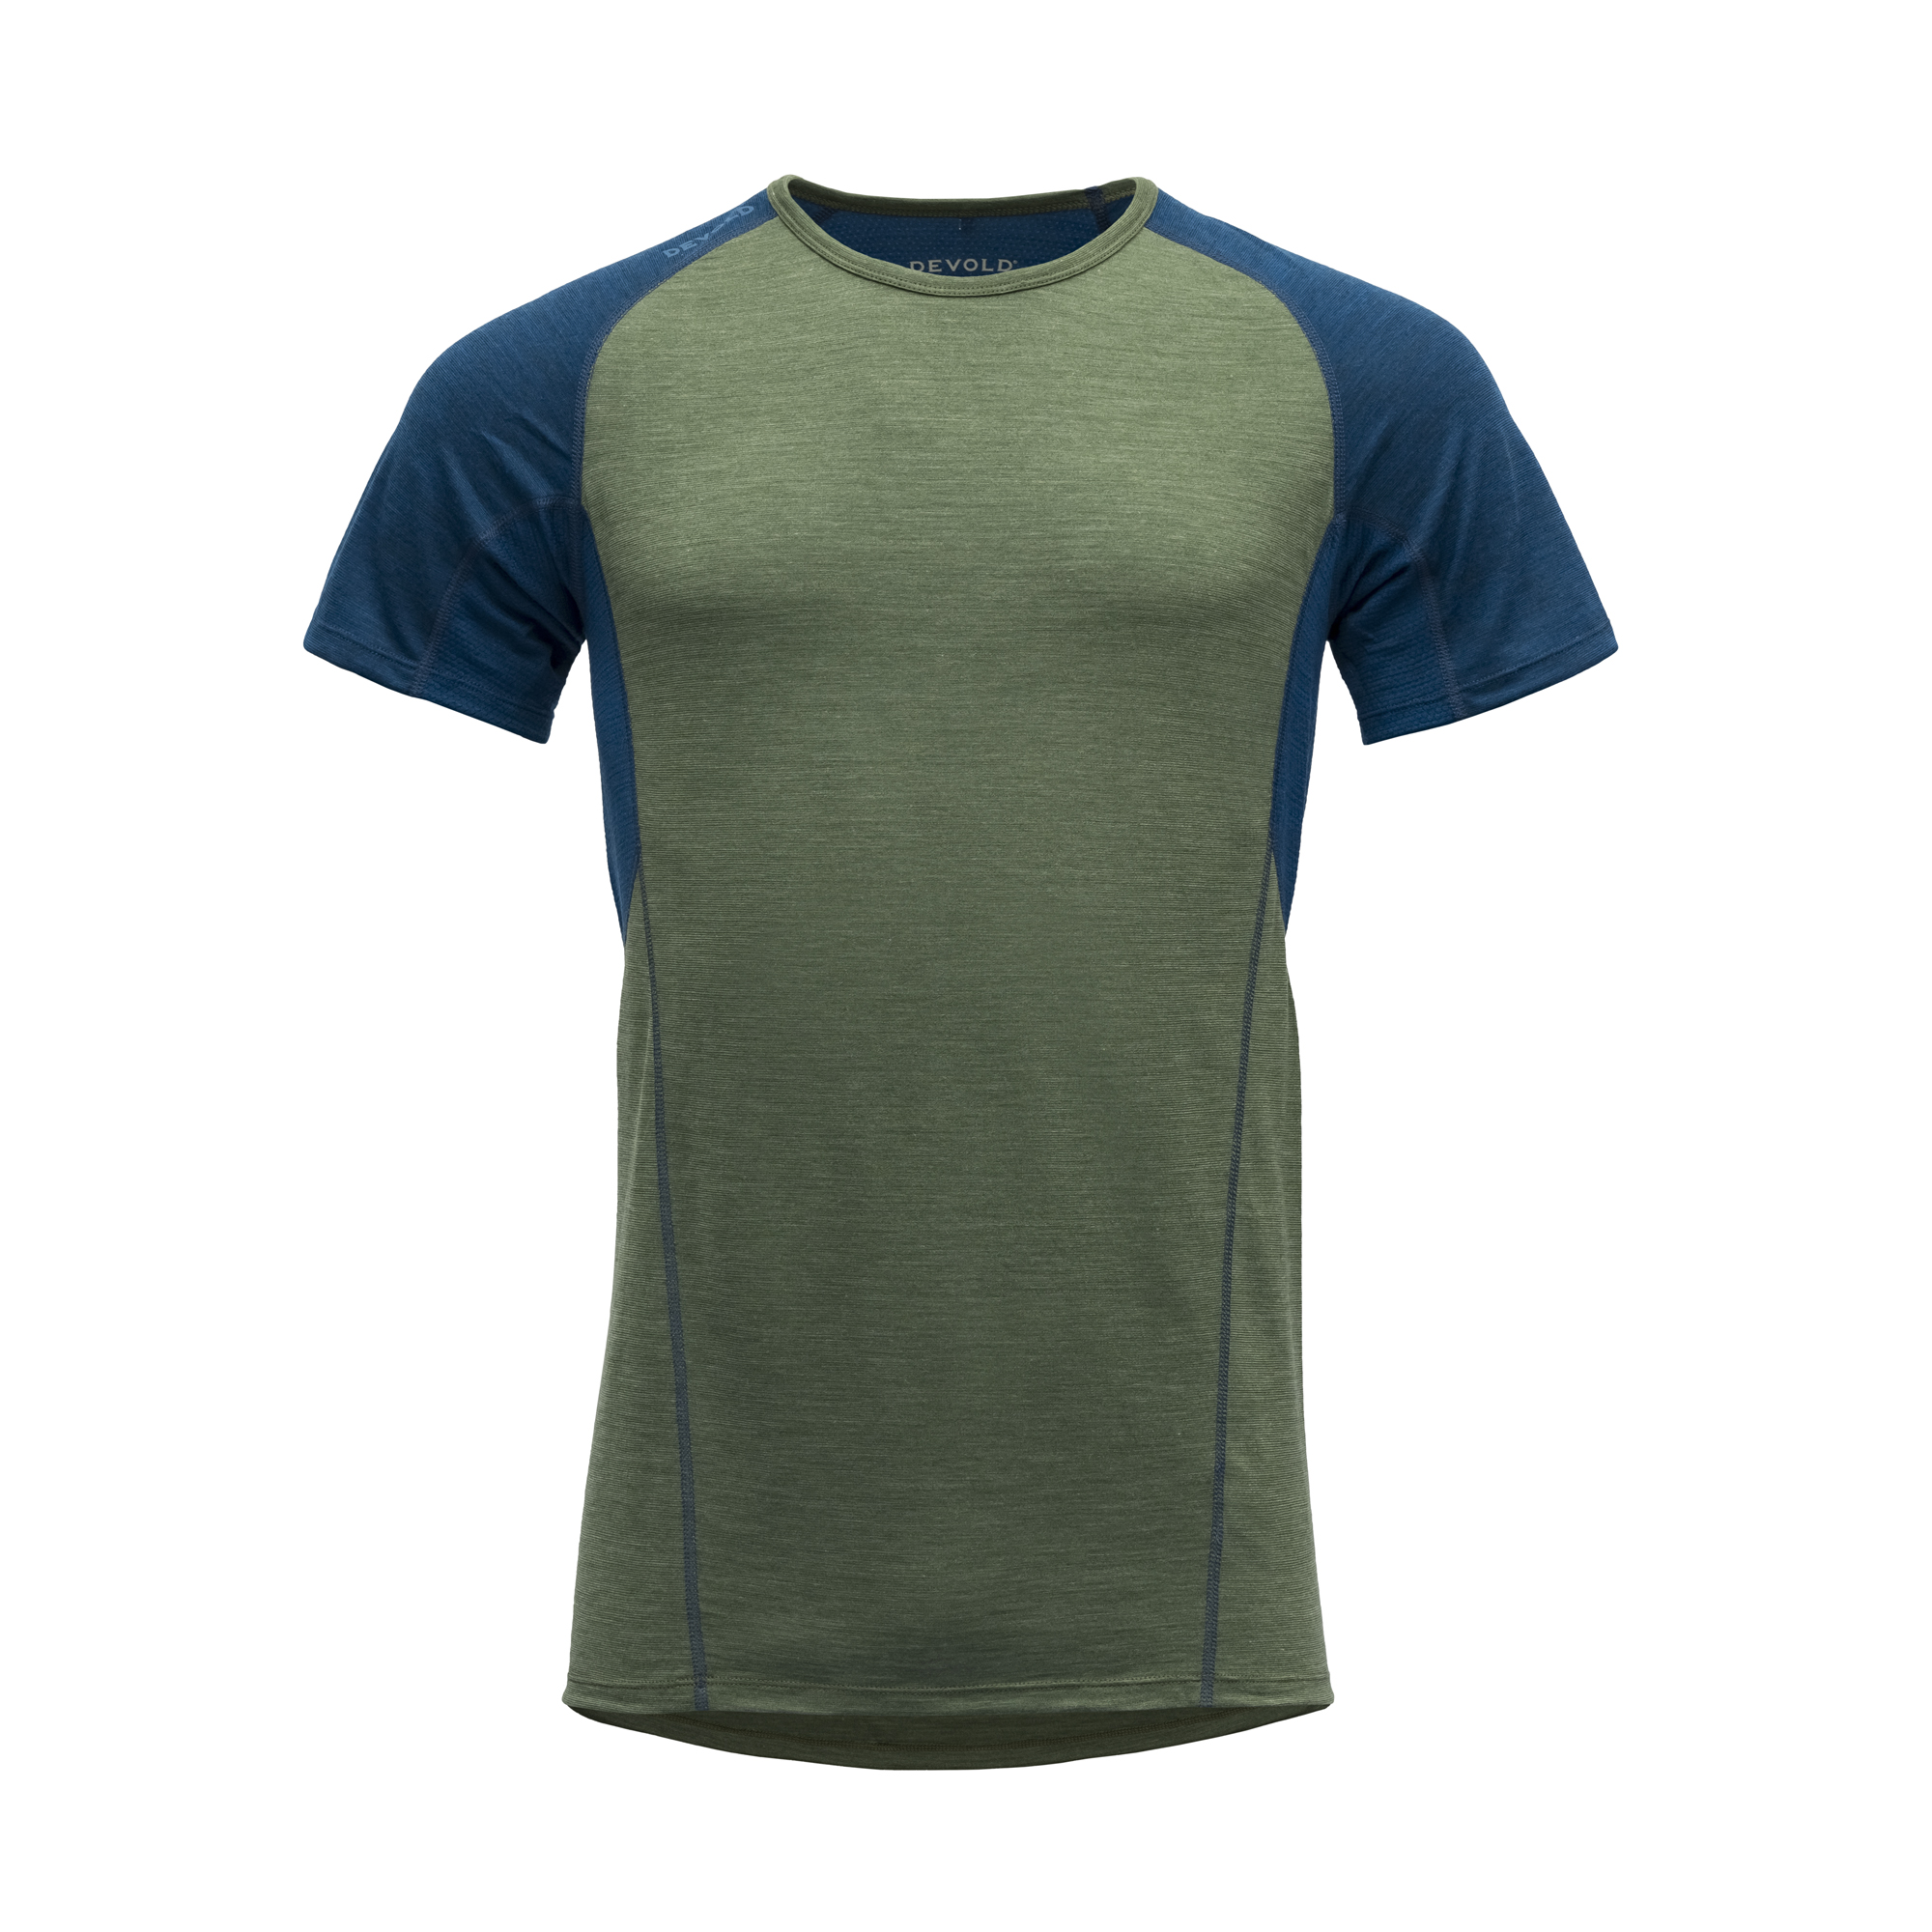 Devold Merino 130 tričko s krátkým rukávem - pánské - zelená/modrá Velikost: M